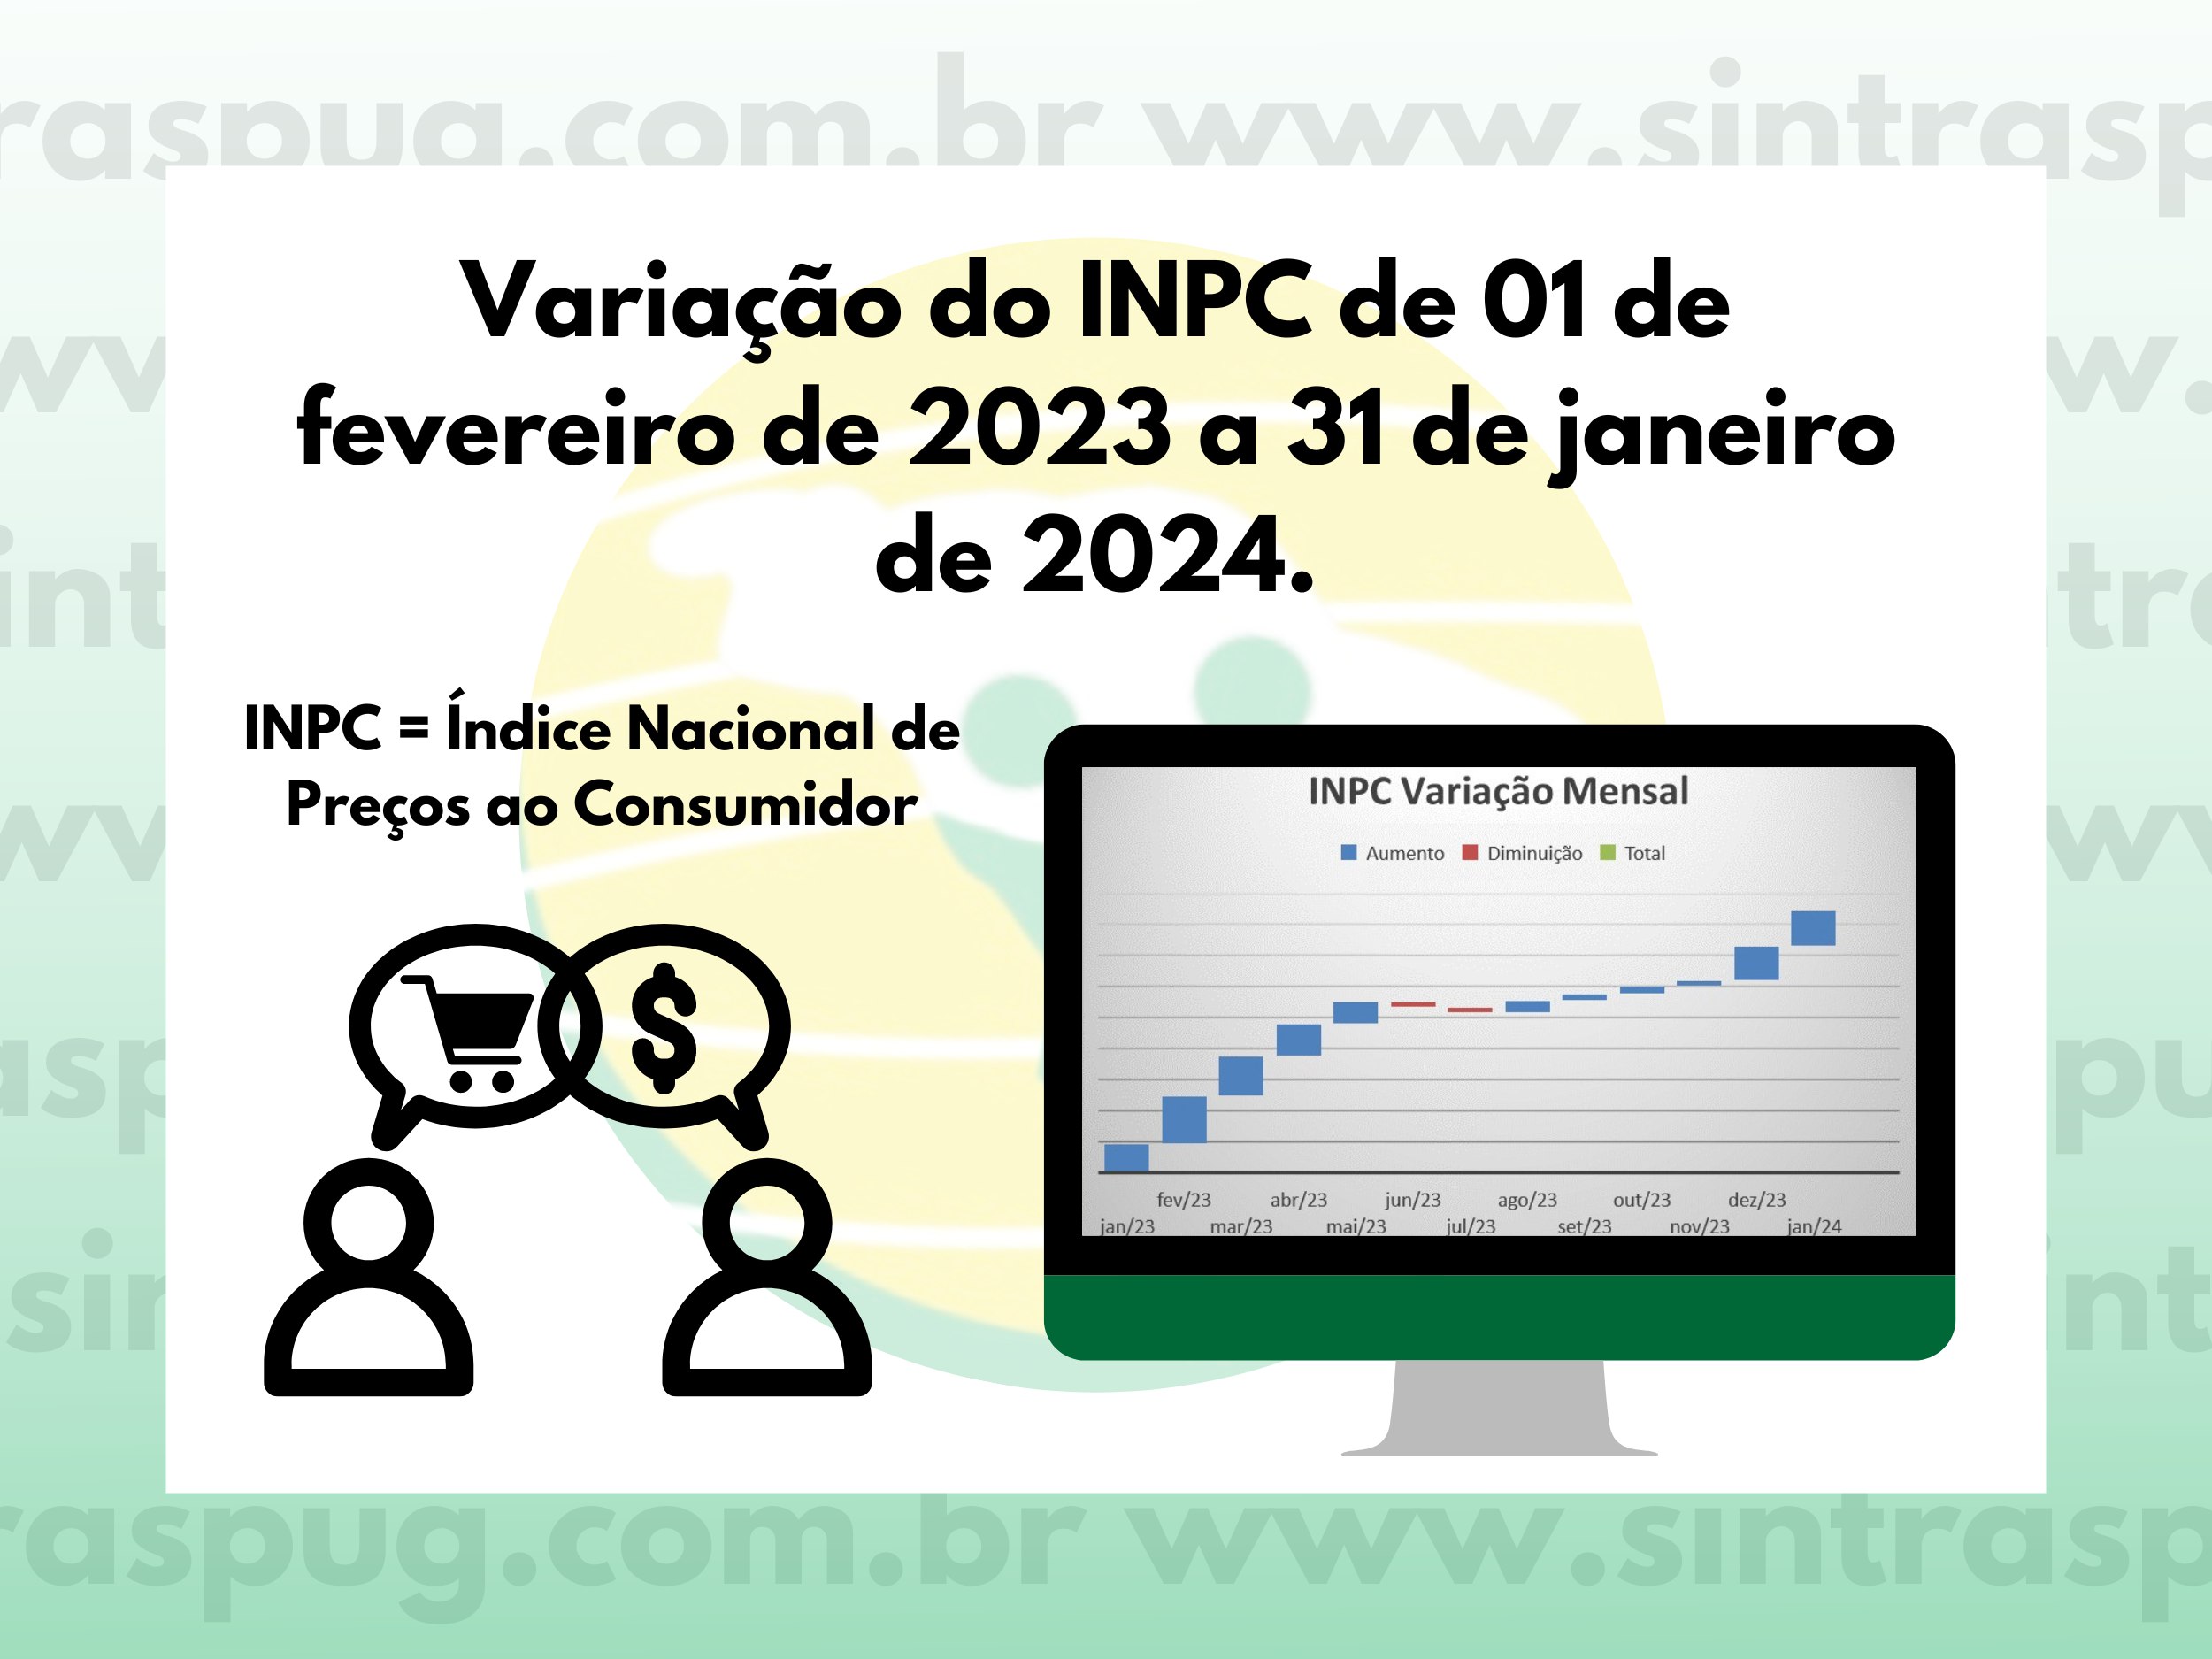 Variação do INPC de 01 de fevereiro de 2023 a 31 de janeiro de 2024